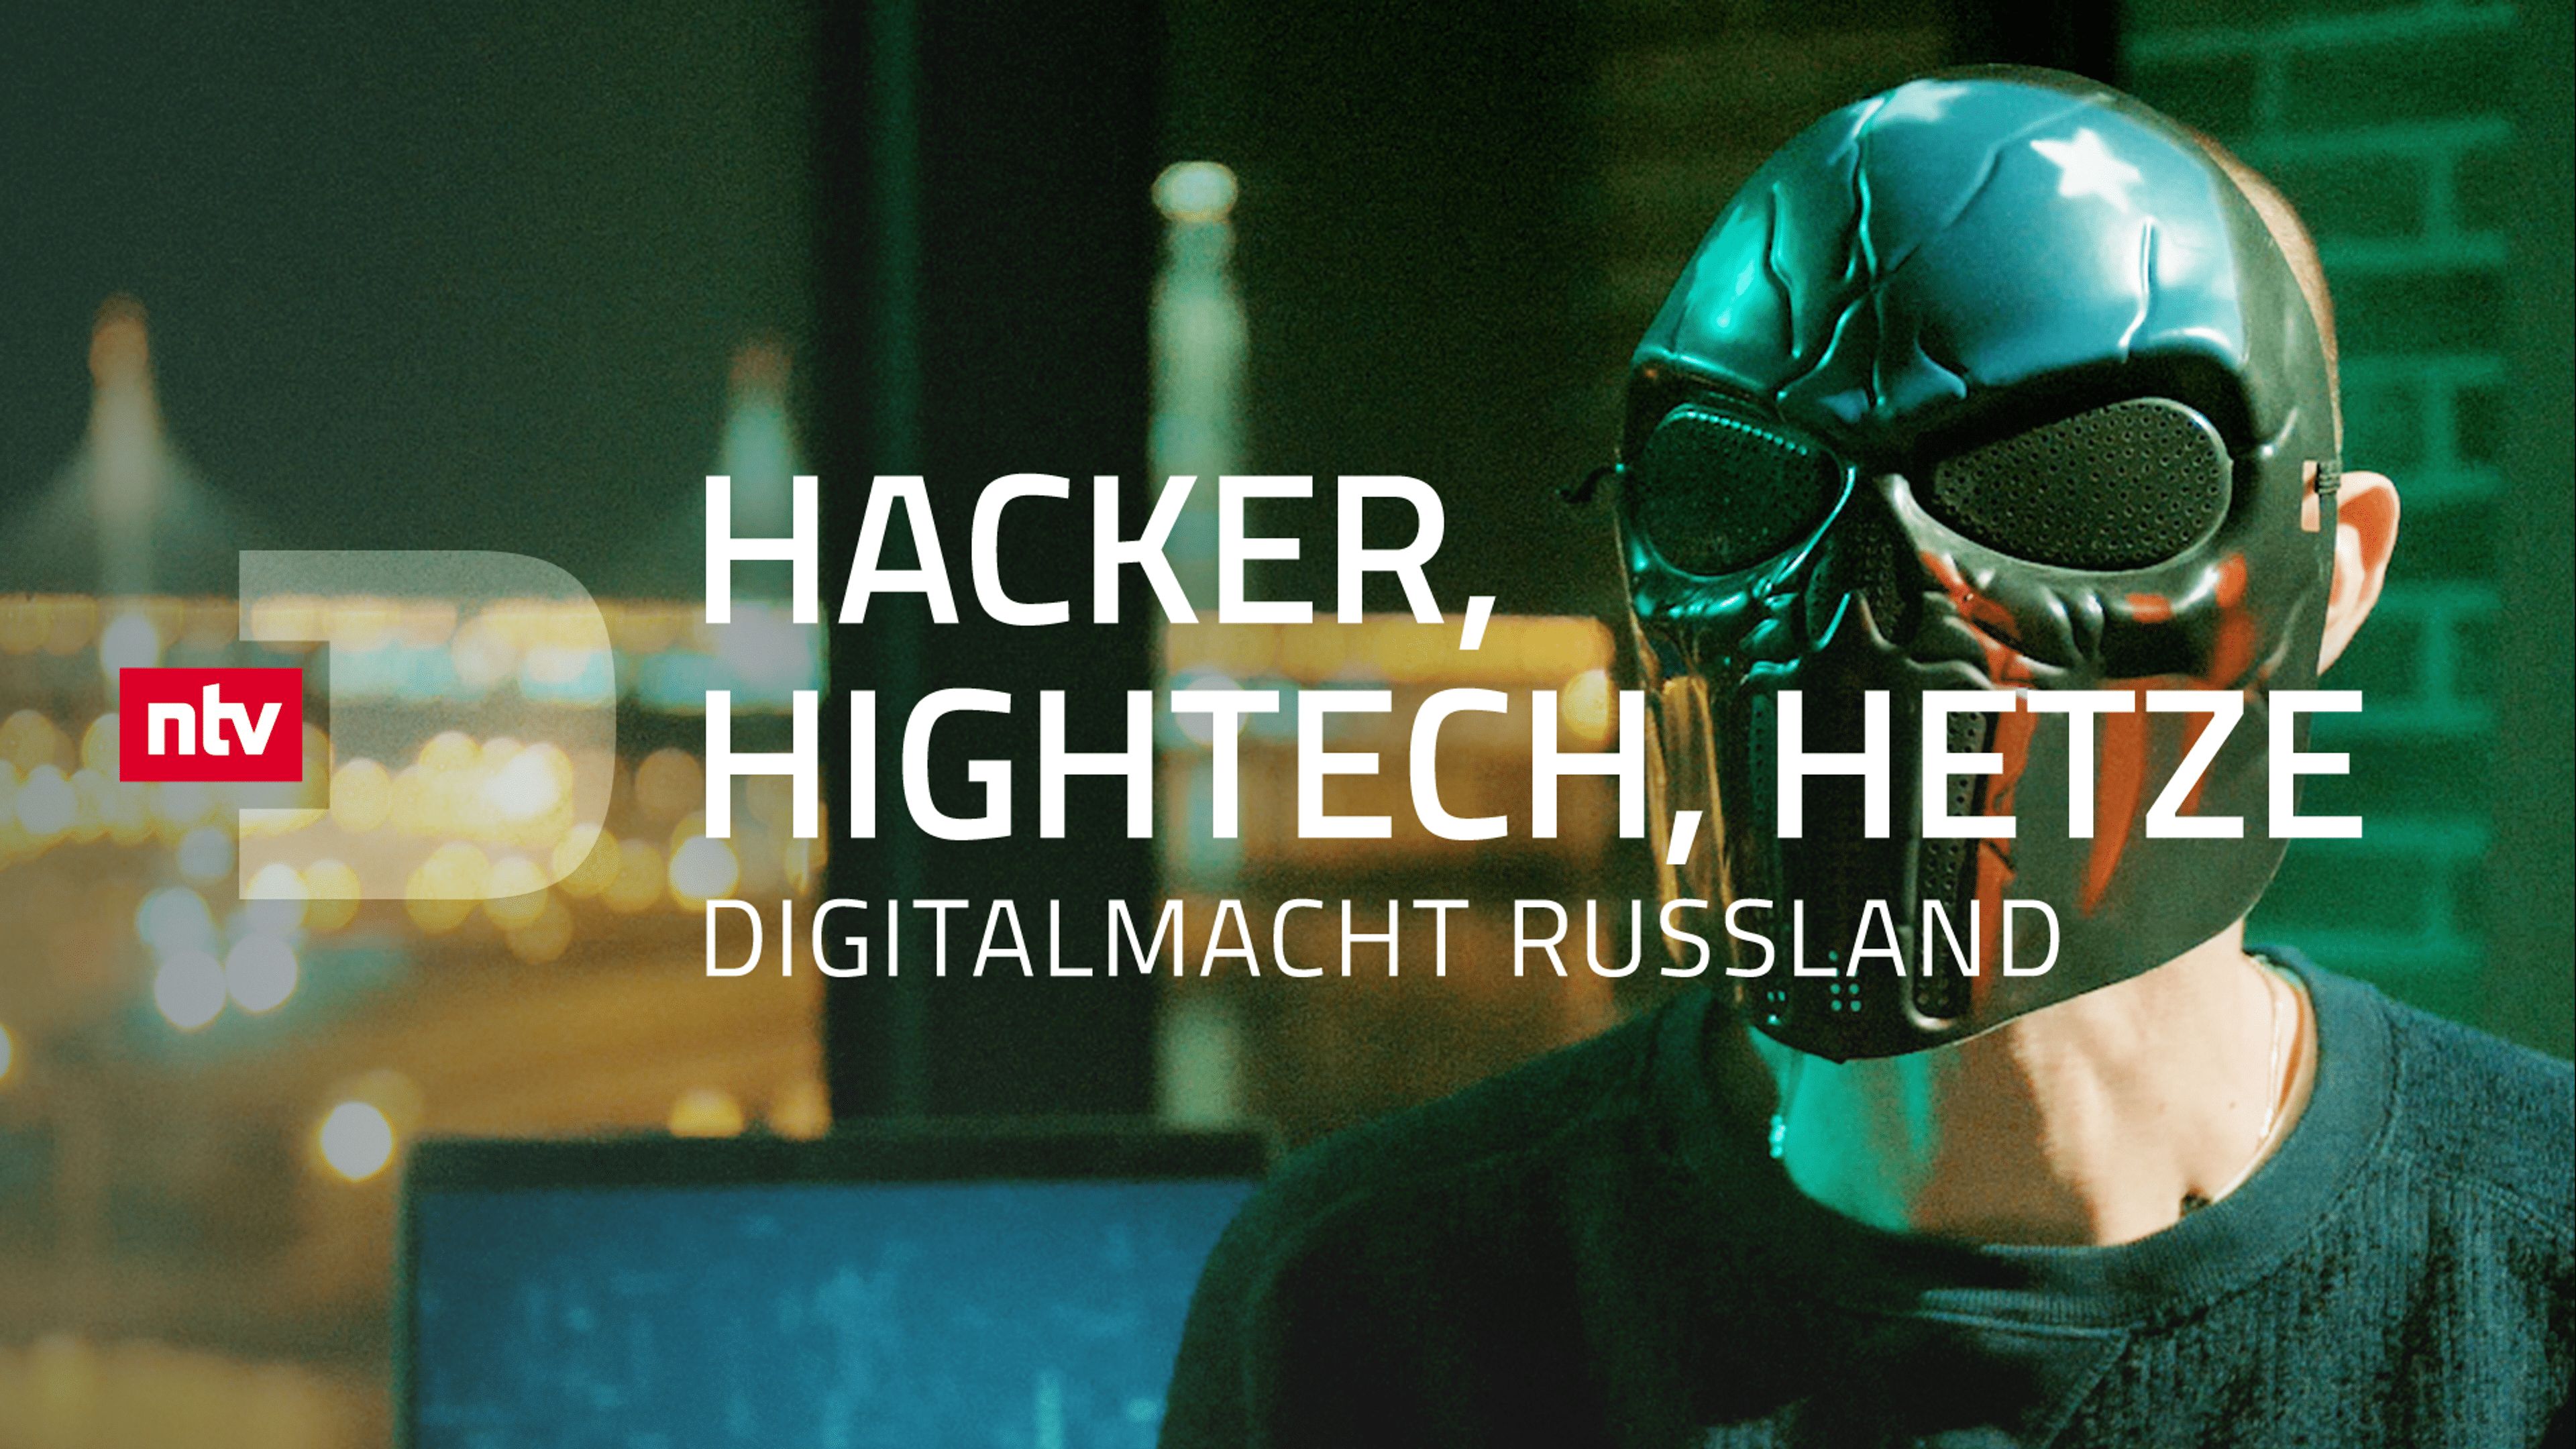 Hacker, Hightech, Hetze - Digitalmacht Russland